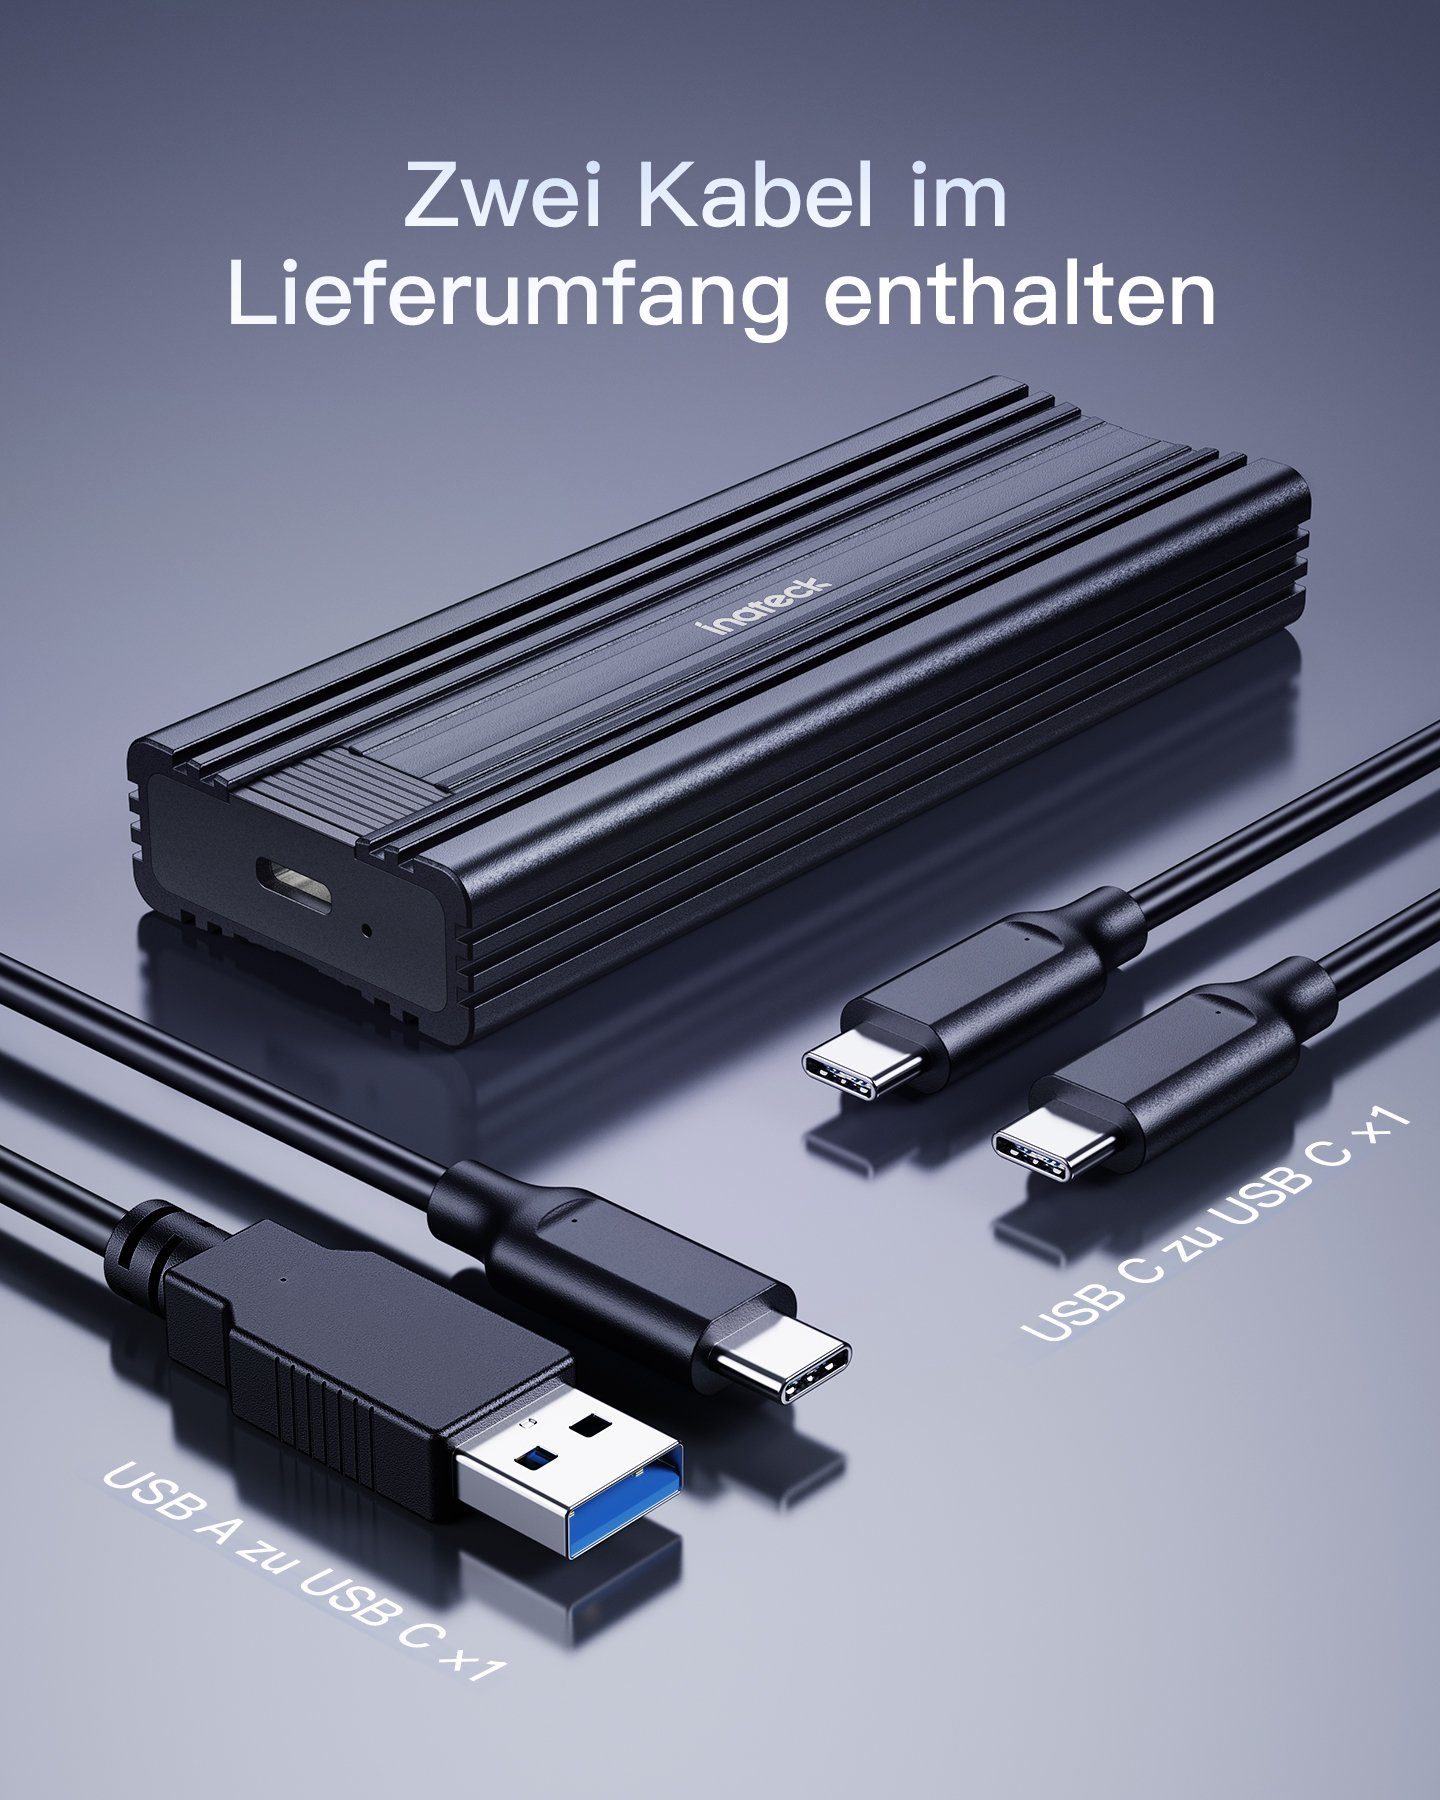 Inateck Festplatten-Gehäuse NVMe M.2 Festplattengehäuse, Kabel und C mit C USB schwarz C 10 zu Gbps, USB zu A